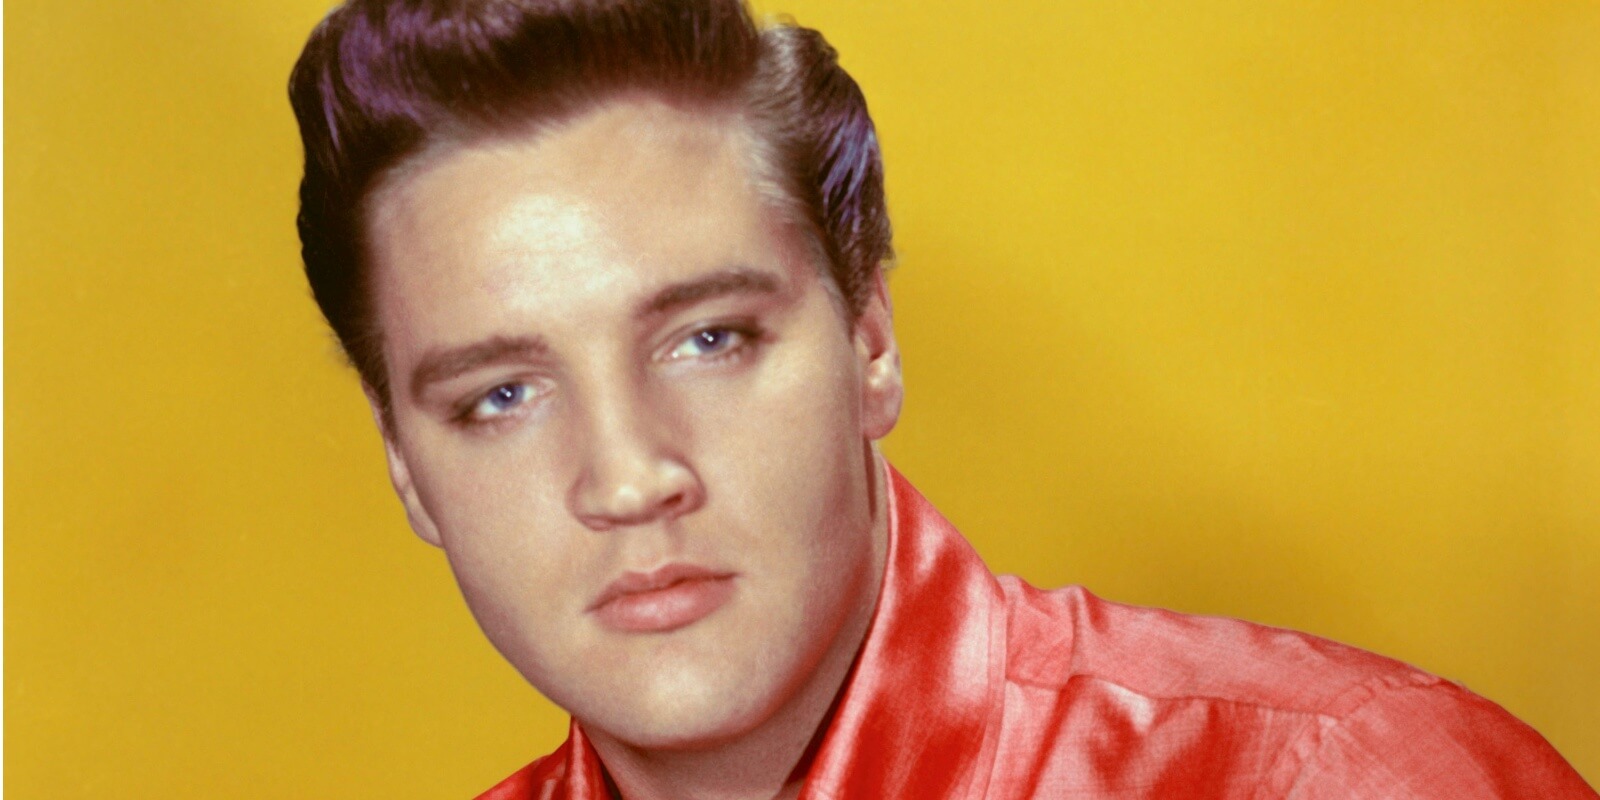 这是猫王埃尔维斯·普雷斯利(Elvis Presley)于1960年拍摄的照片，数年前，他演唱了第一首热门歌曲《心碎酒店》(Heartbreak Hotel)。